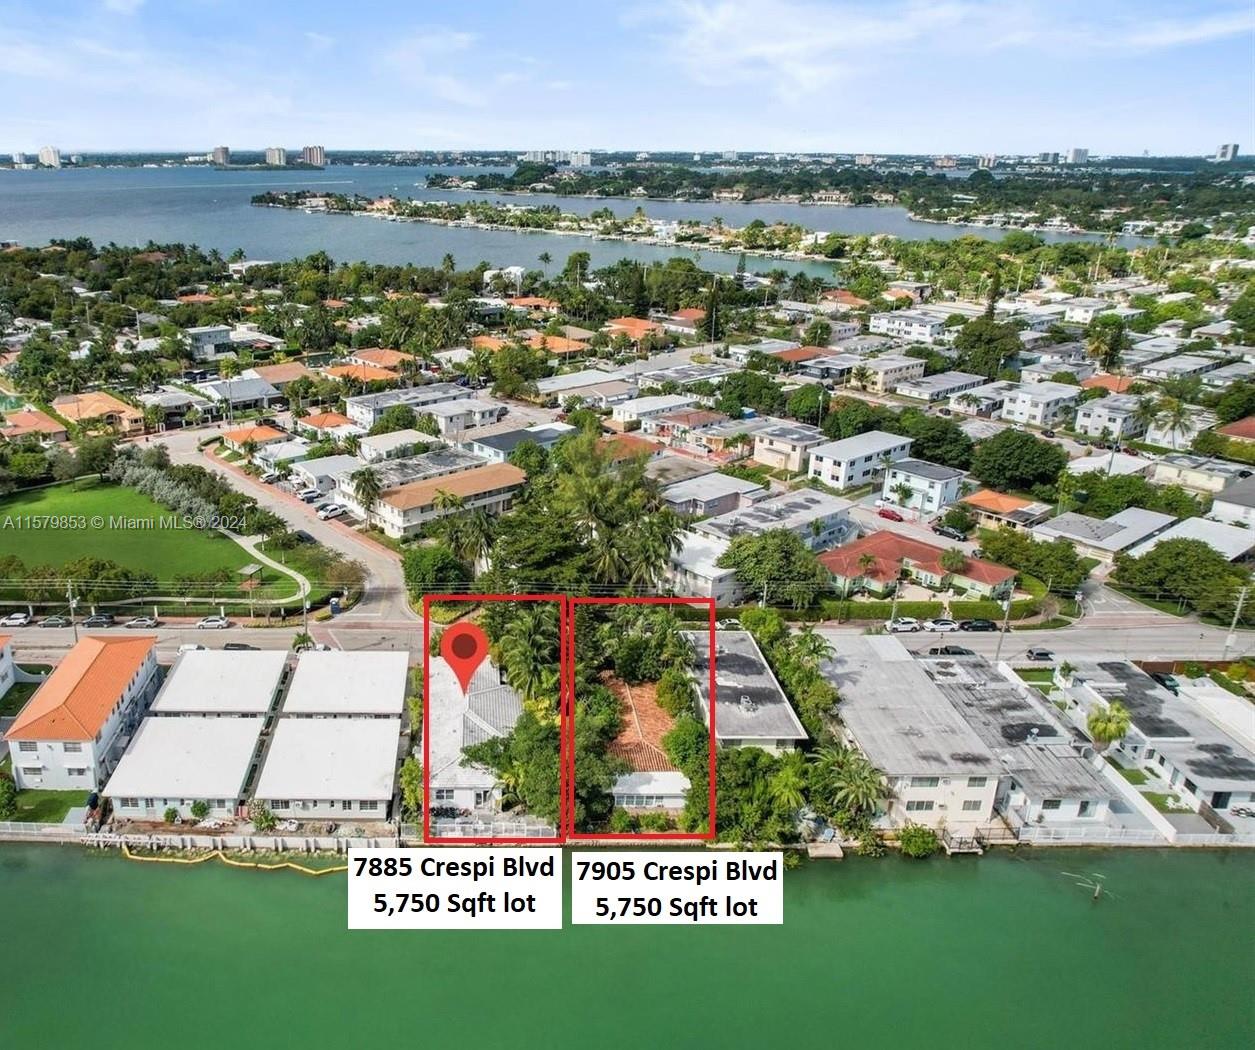 Rental Property at 7905 Crespi Blvd, Miami Beach, Miami-Dade County, Florida -  - $1,600,000 MO.